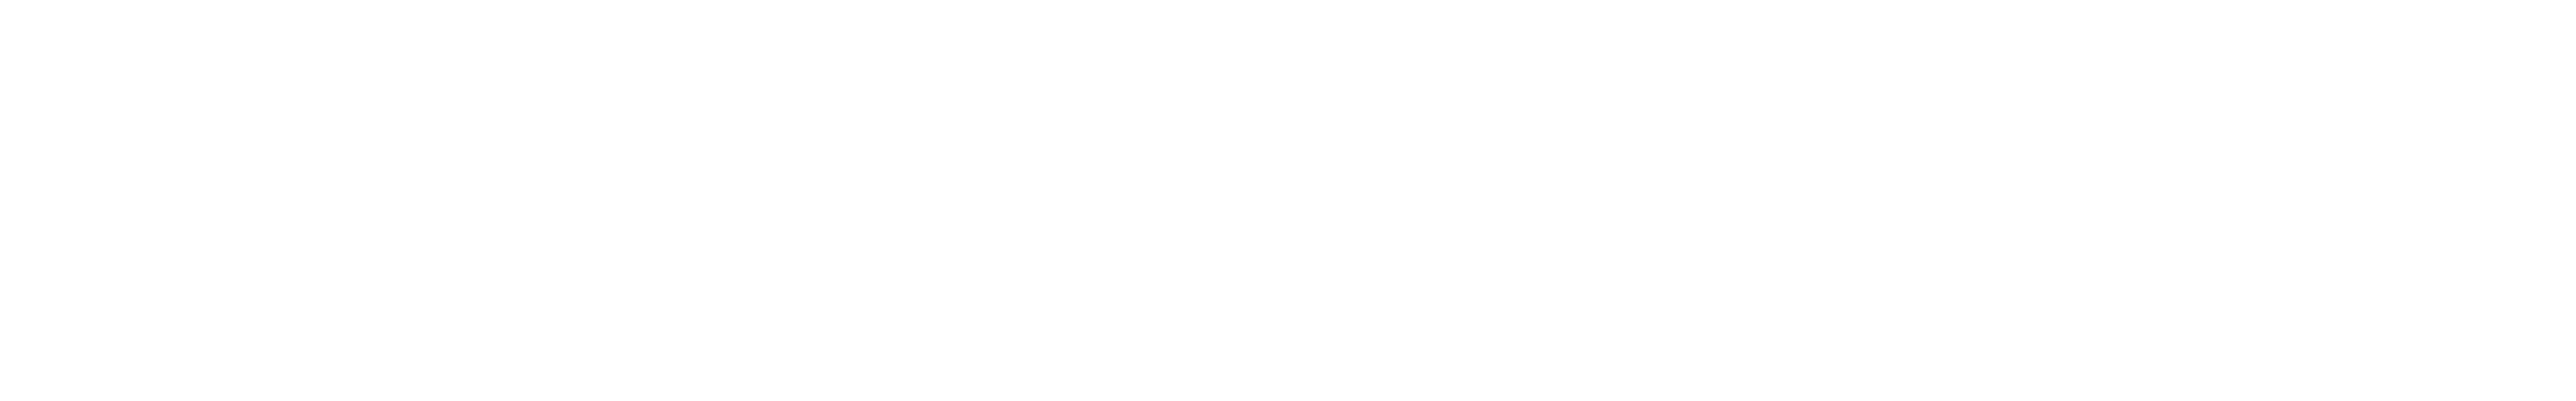 Gen-tech automotive performance logo white